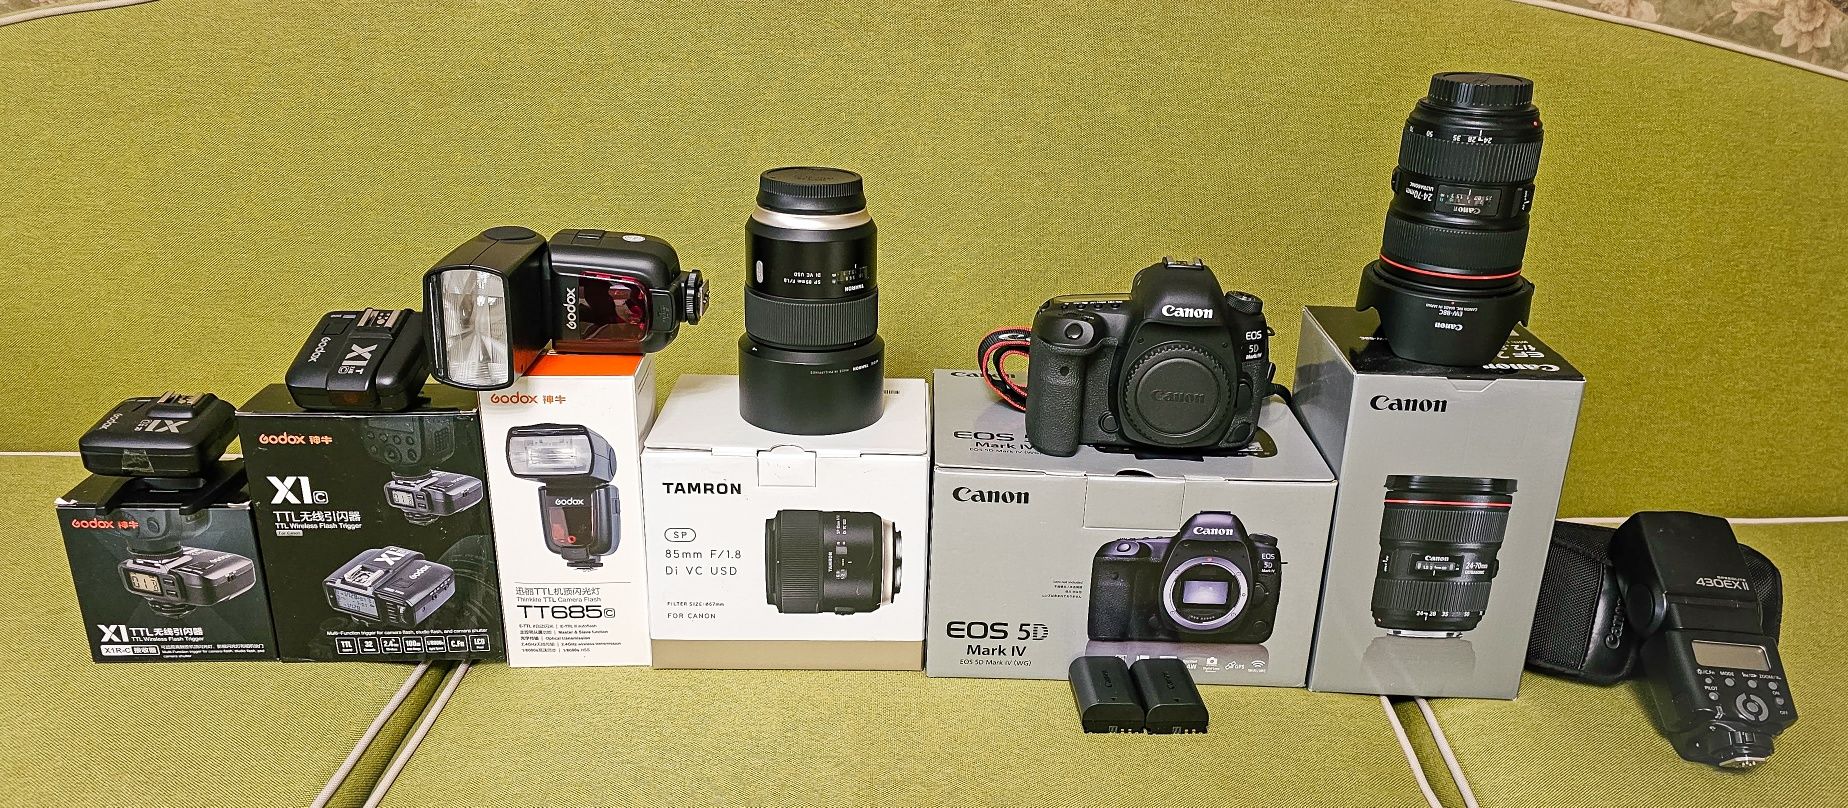 Kit complet Canon 5d mark 4 + Obiectiv Canon + Obiectiv Tamron!